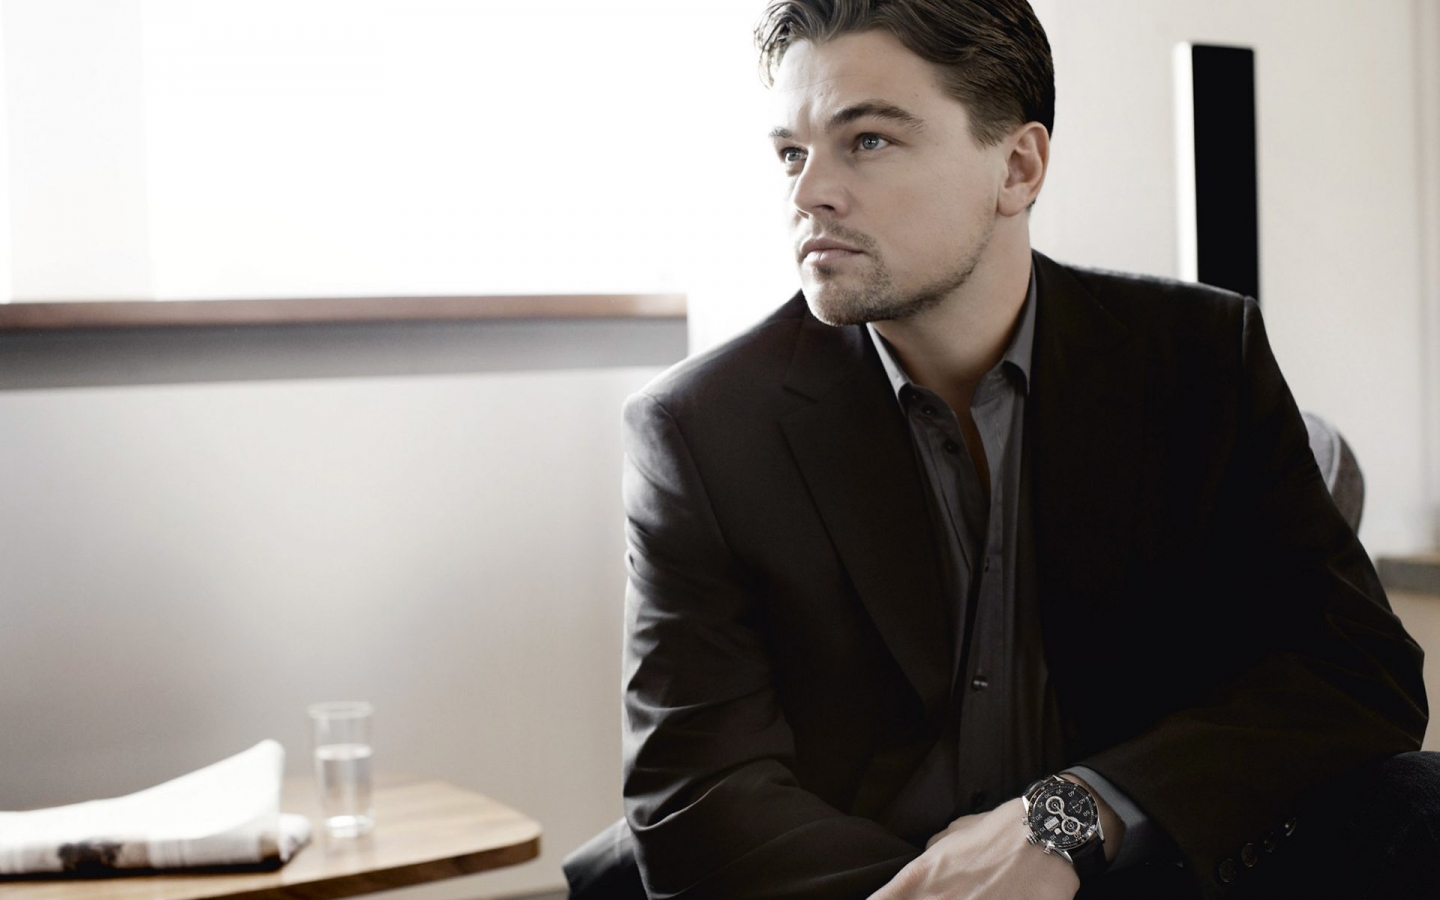 Leonardo DiCaprio in Black for 1440 x 900 widescreen resolution